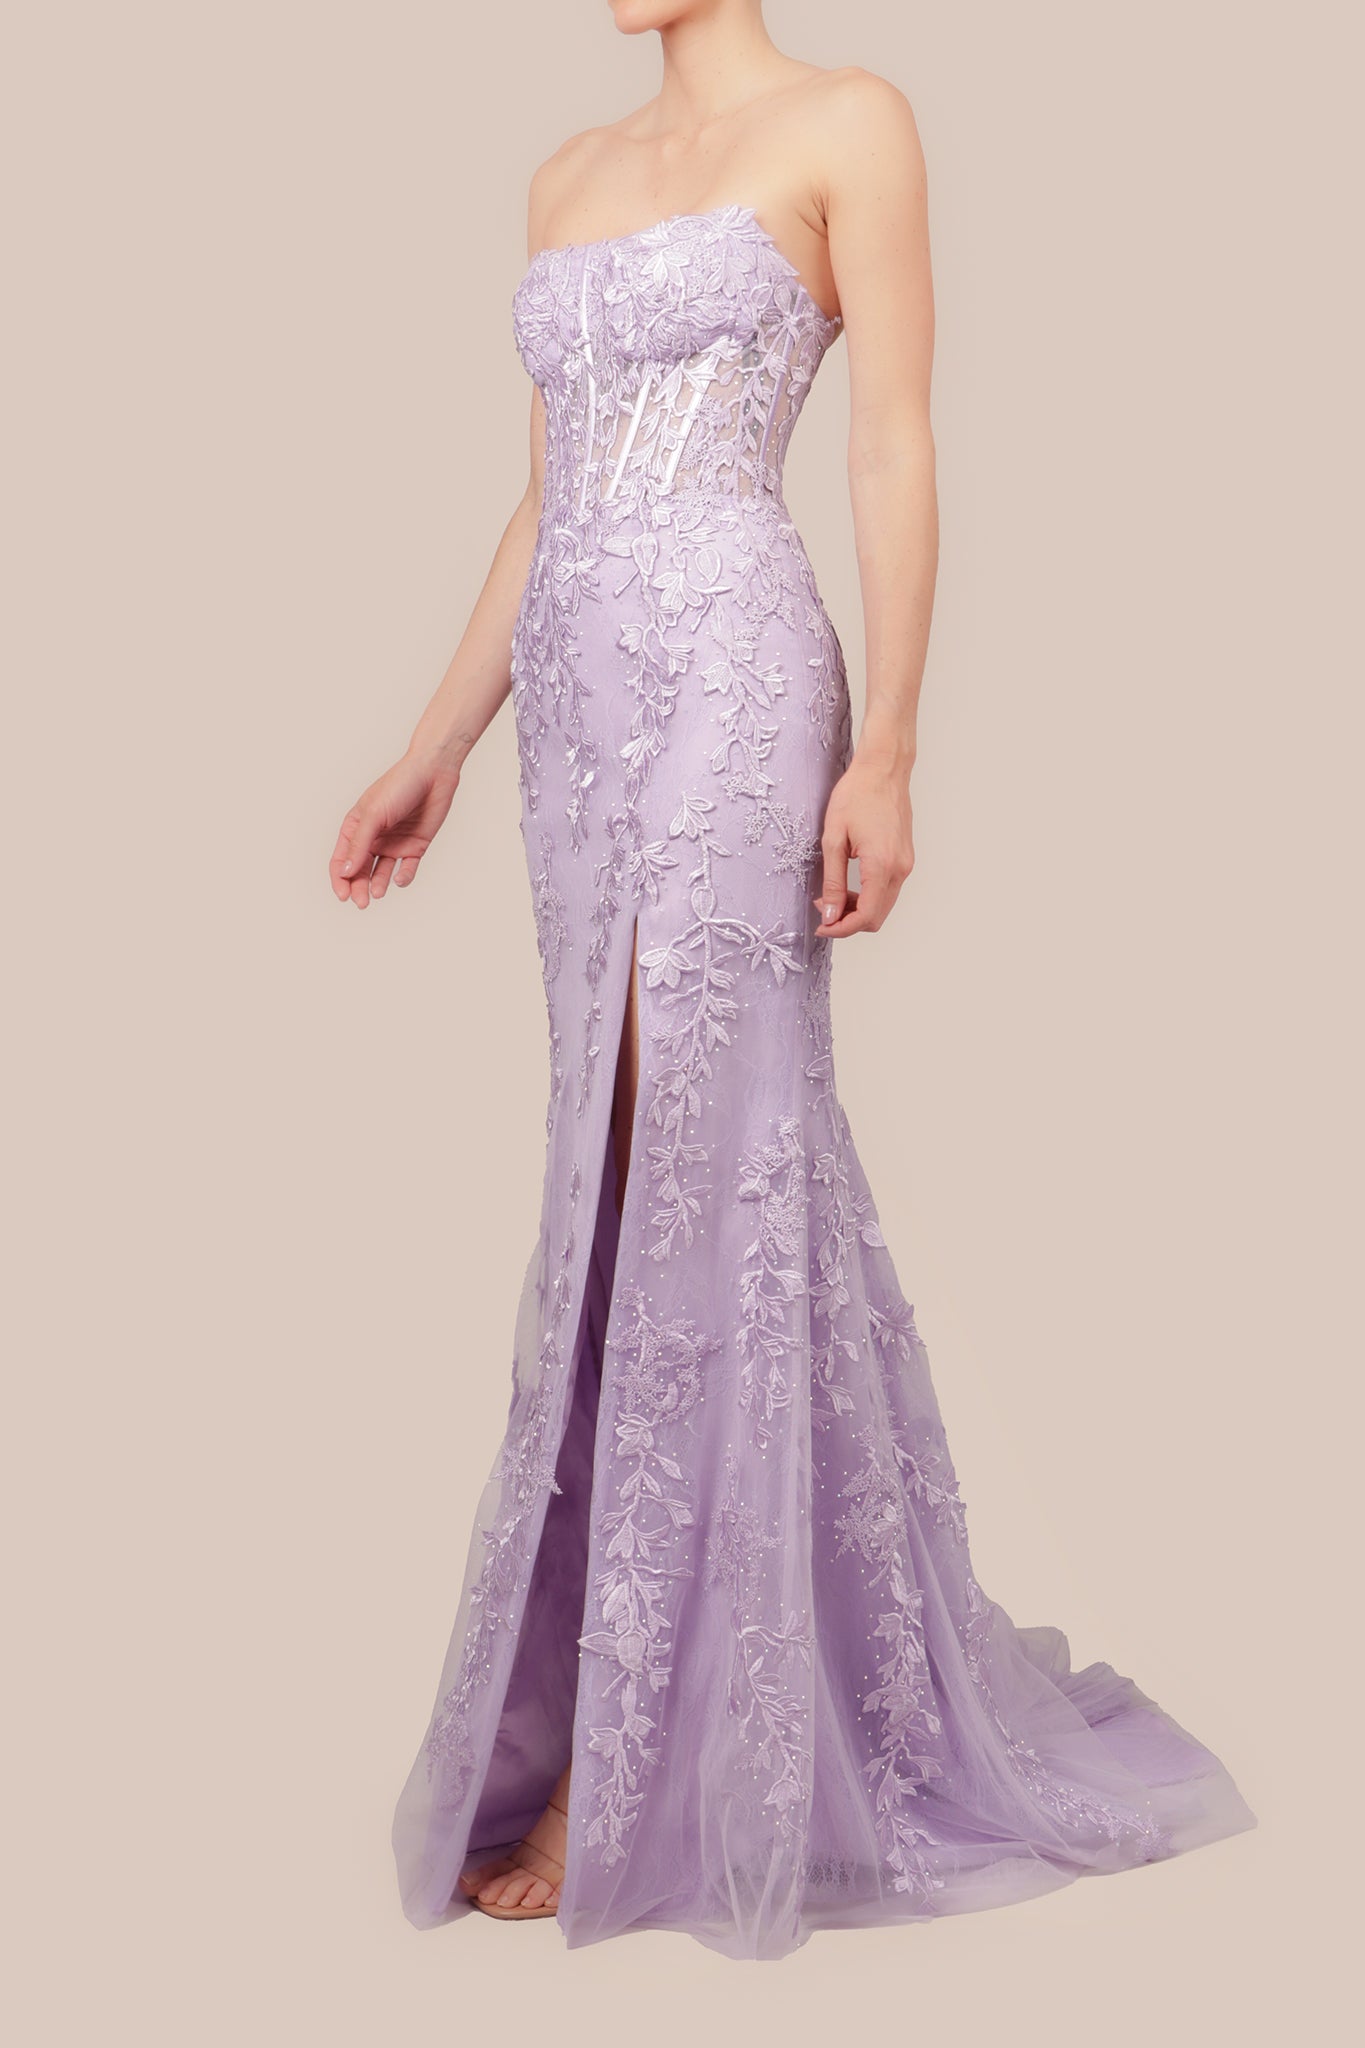 Vestido strapless bordado abertura en pierna lila